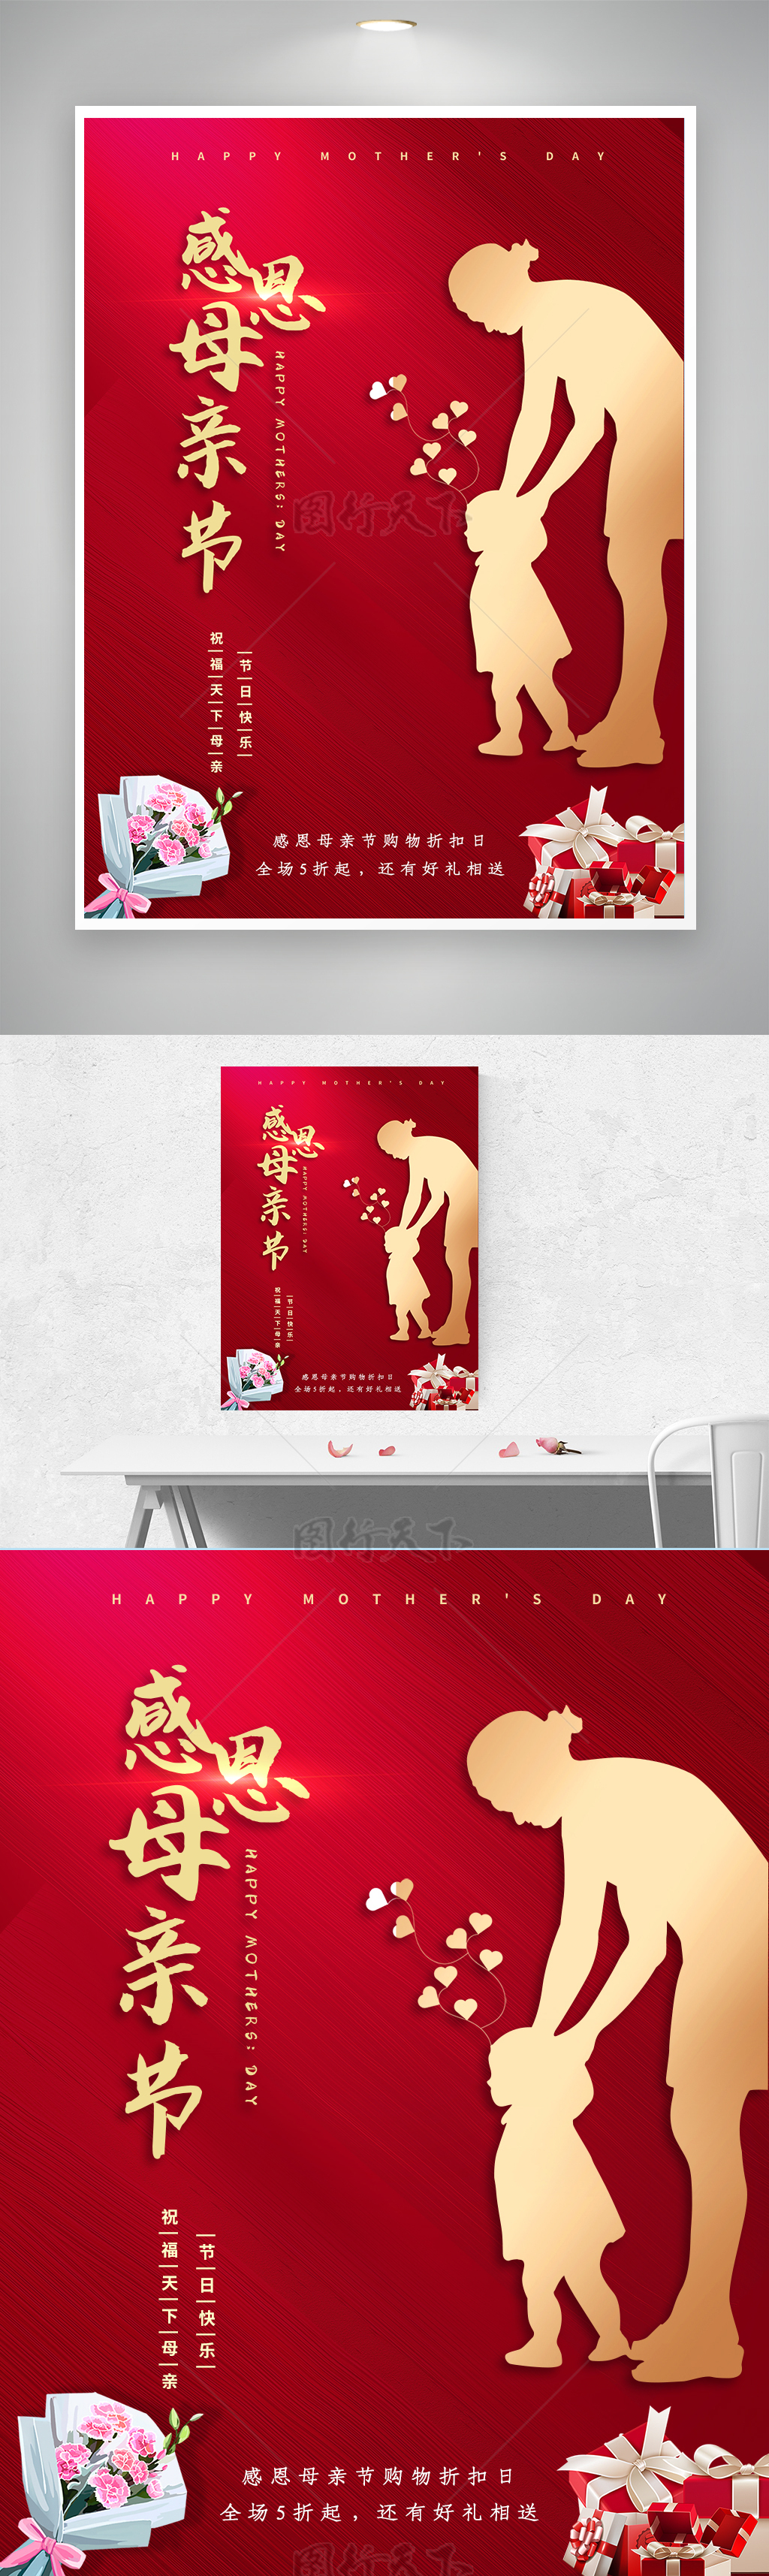 感恩母亲节促销主题红色喜庆背景展板海报